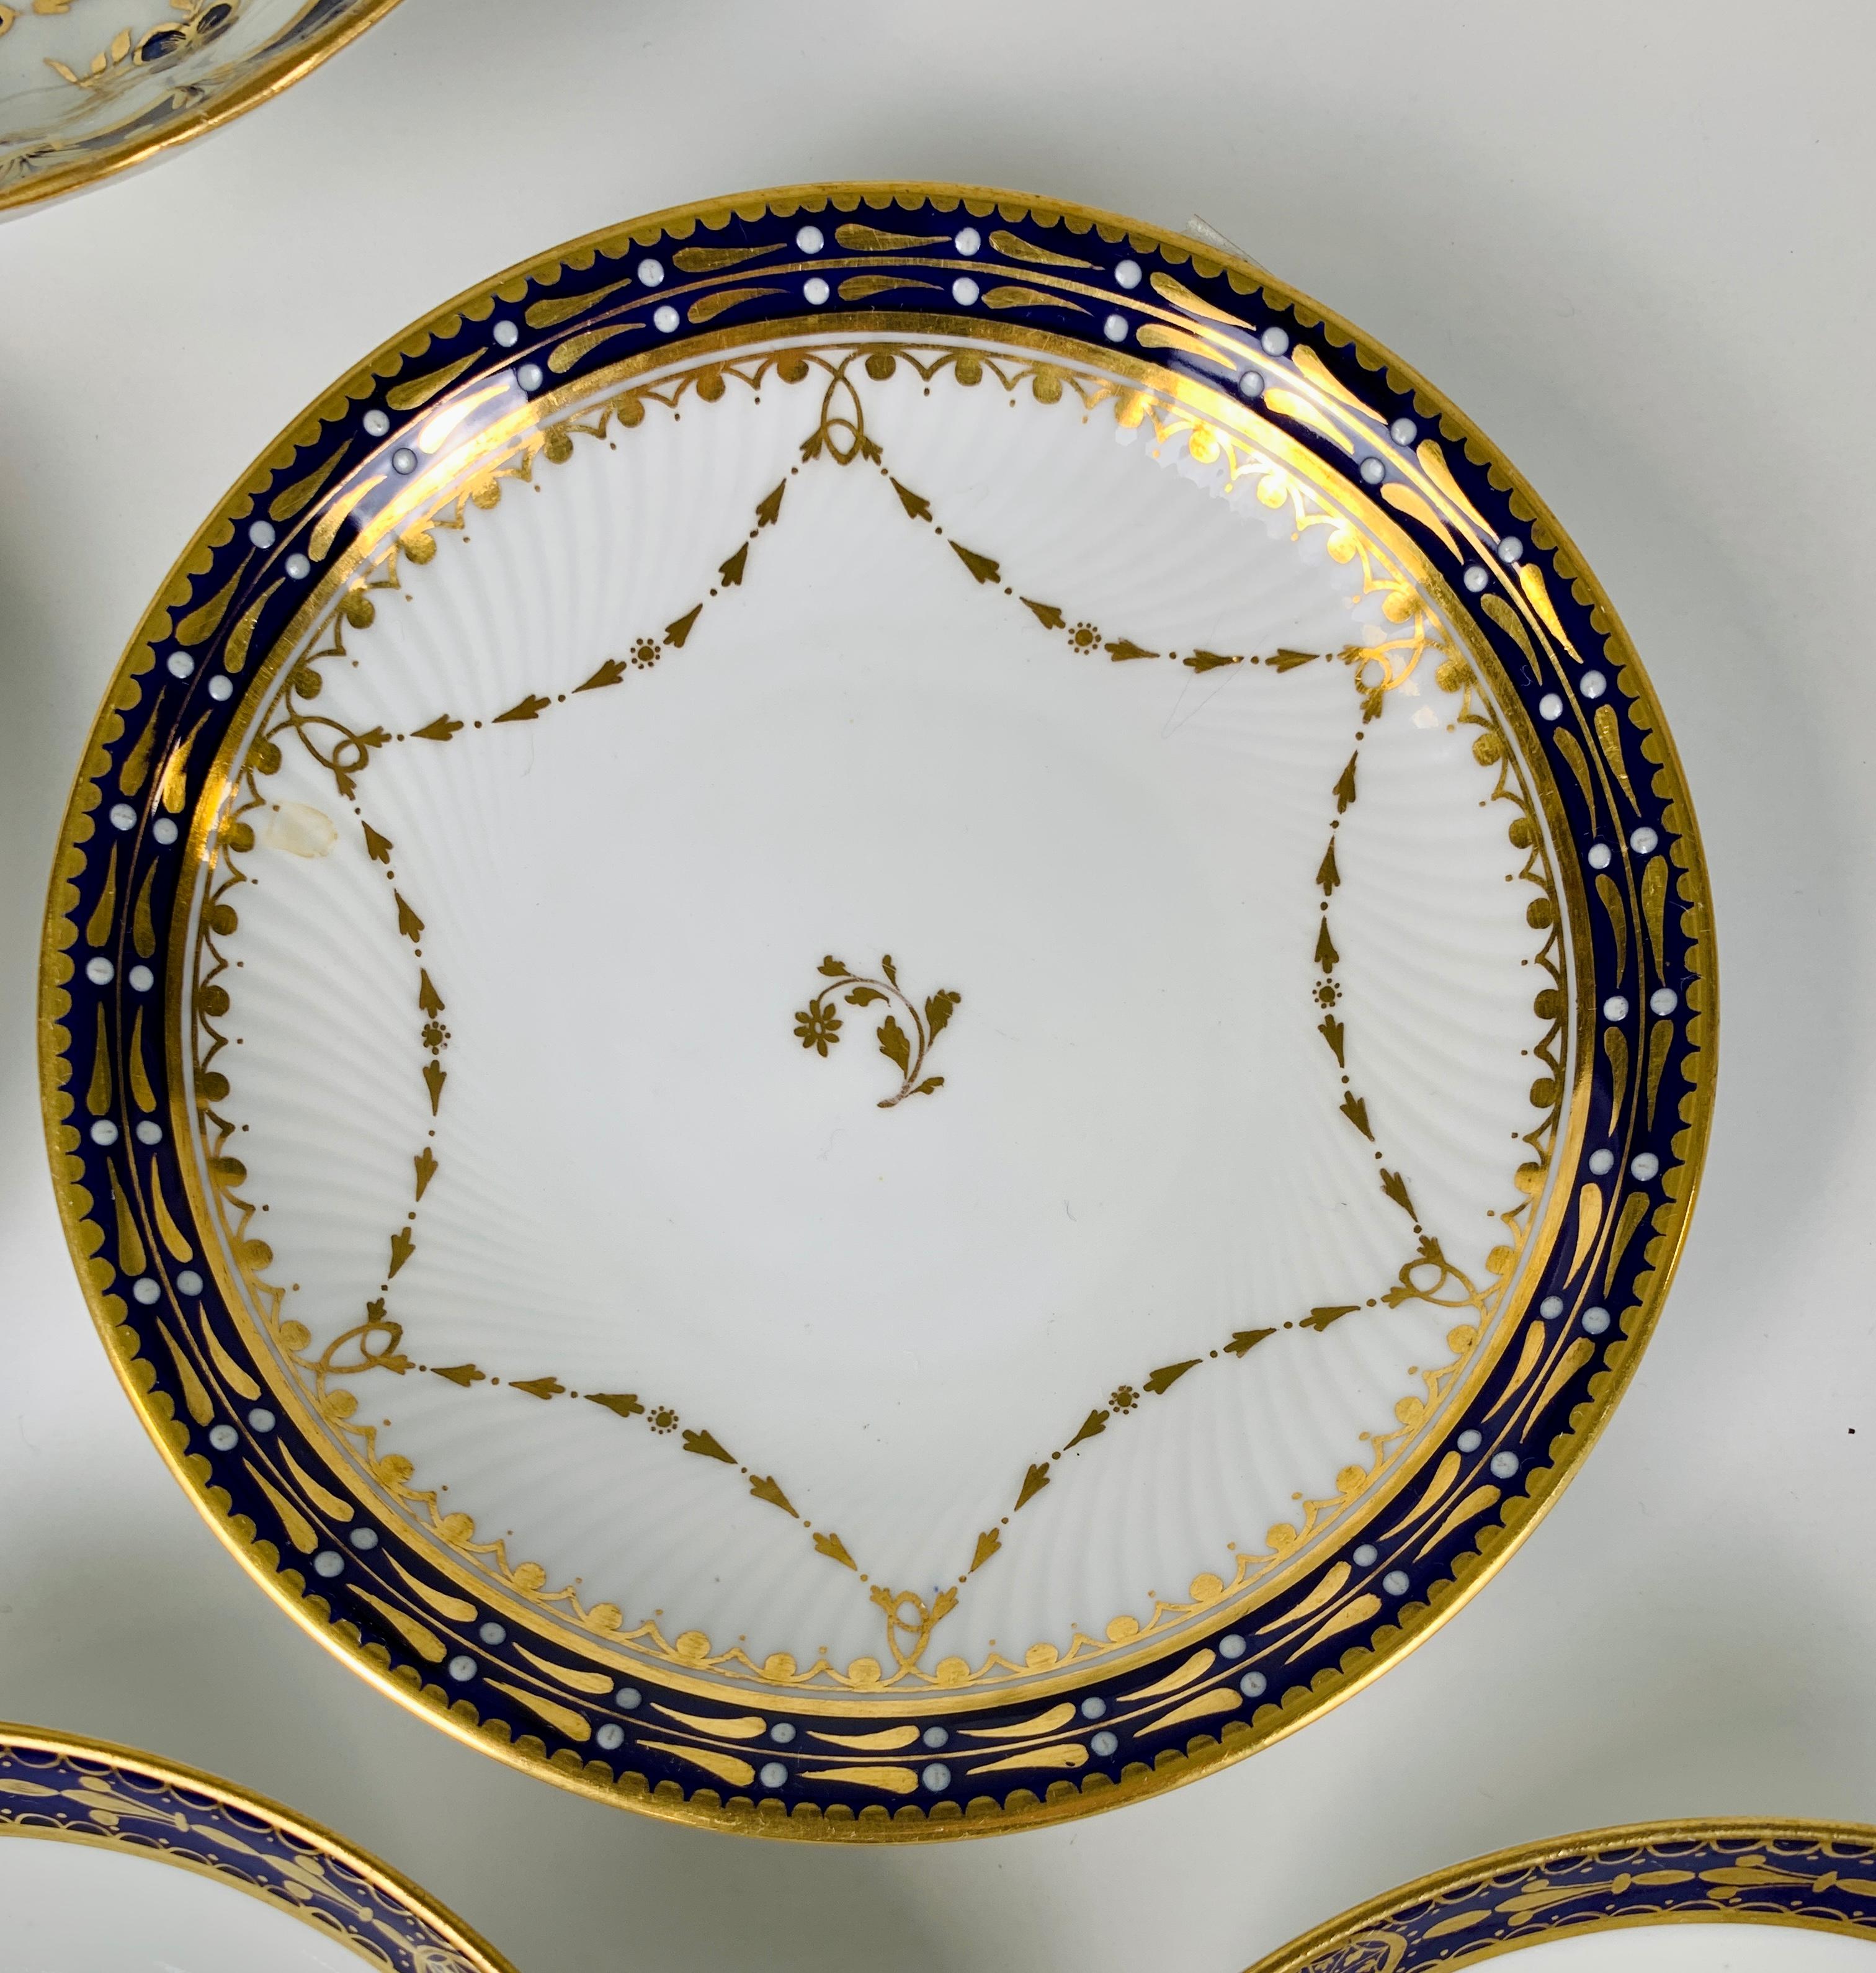 Sechs antike Porzellanuntertassen mit kobaltblauen und goldenen Rändern wurden im späten 19. Jahrhundert in England hergestellt. Das vergoldete Dekor ist einfach und raffiniert im Regency-Stil.
Abmessungen: 5,25